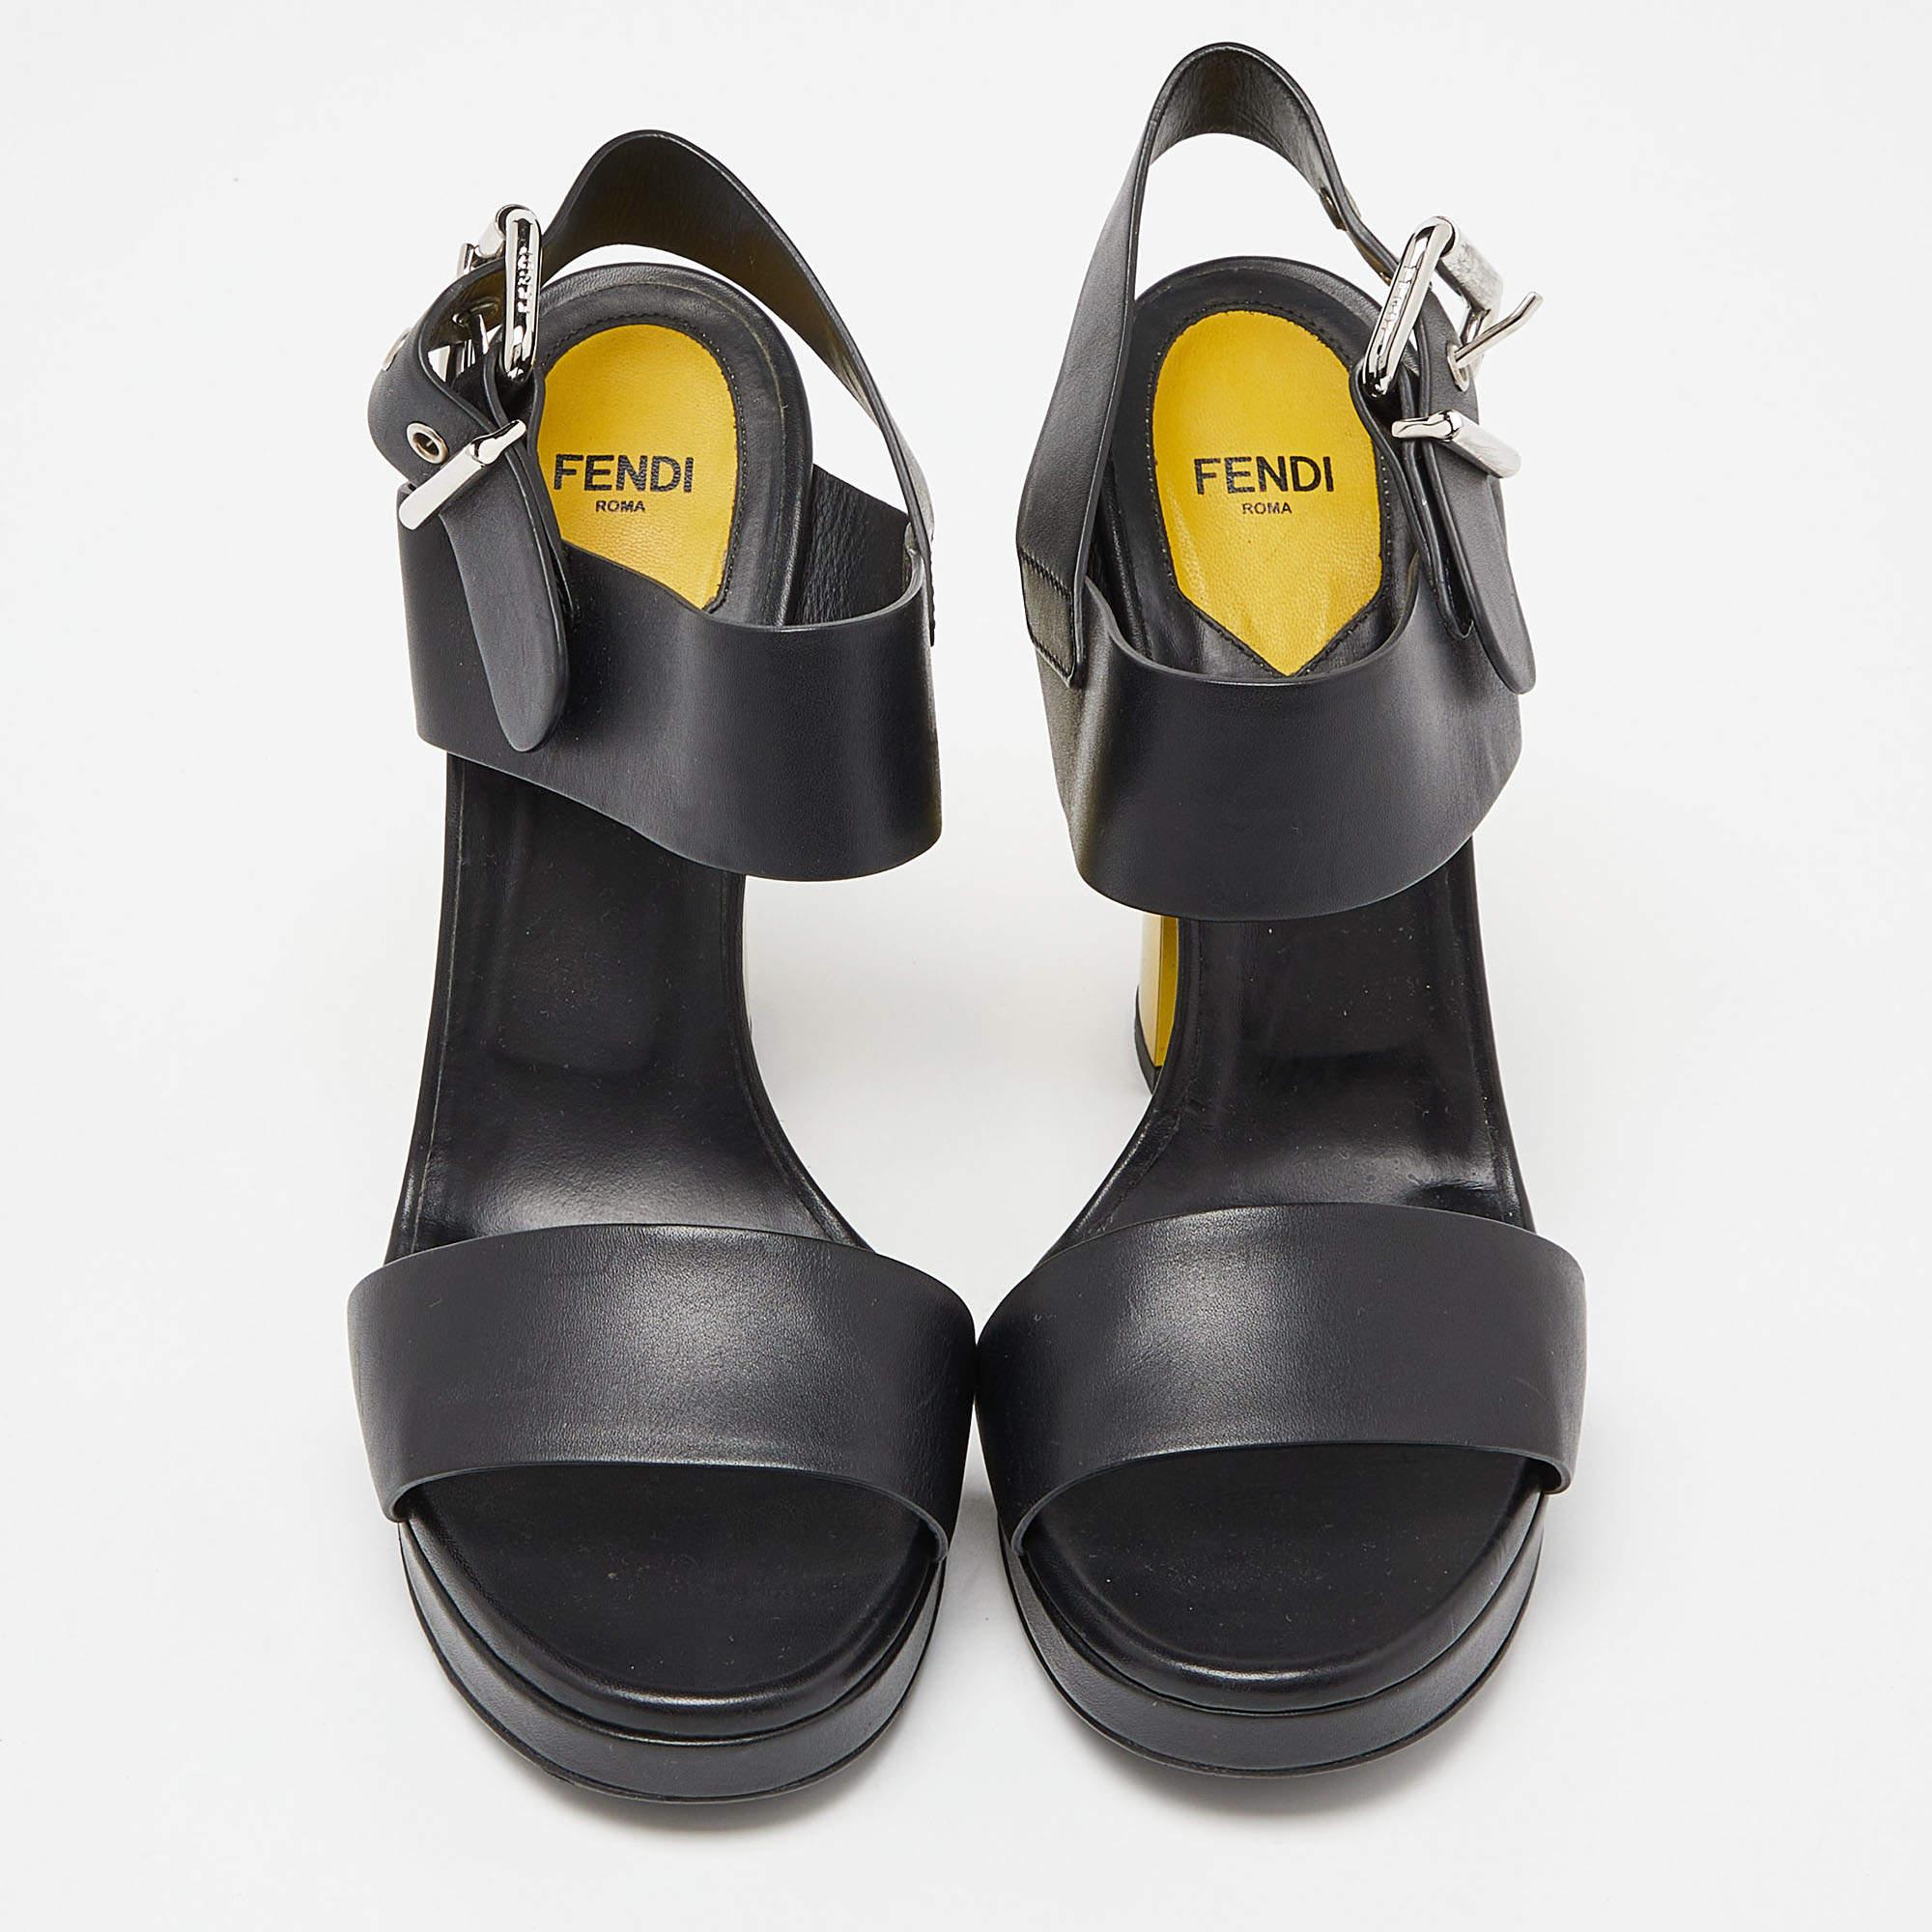 Ces sandales encadreront vos pieds de manière élégante. Fabriquées à partir de matériaux de qualité, elles présentent un design élégant et des semelles intérieures confortables.

